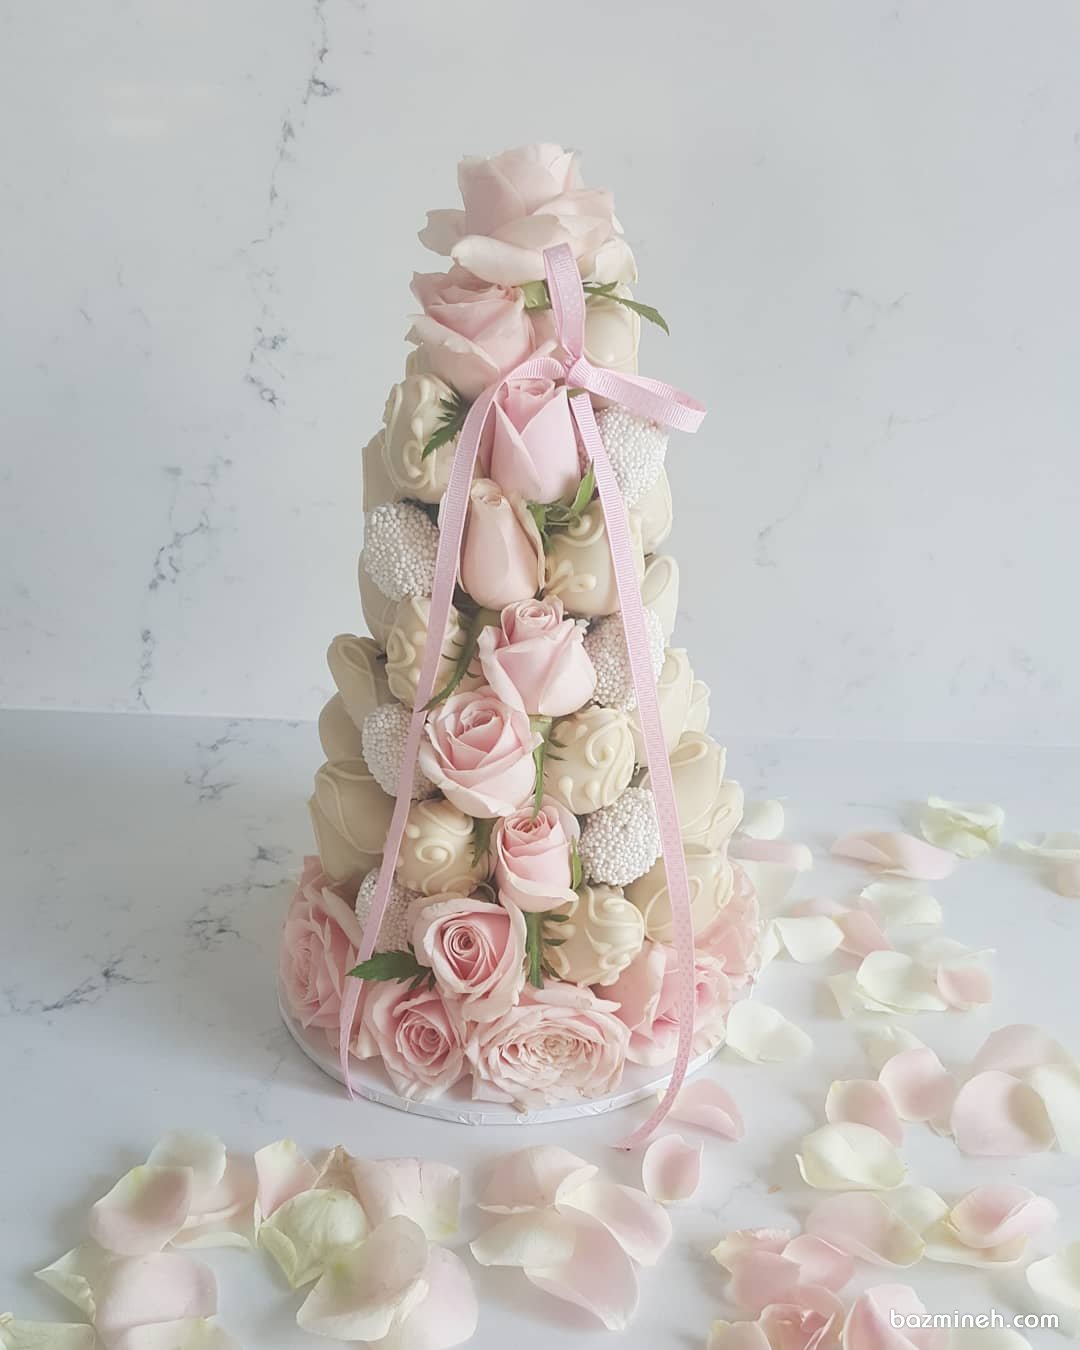 توت فرنگی با روکش تزیین شده با گل های رز گلبهی کرم پیشنهادی زیبا برای میز پذیرایی جشن تولد یا نامزدی